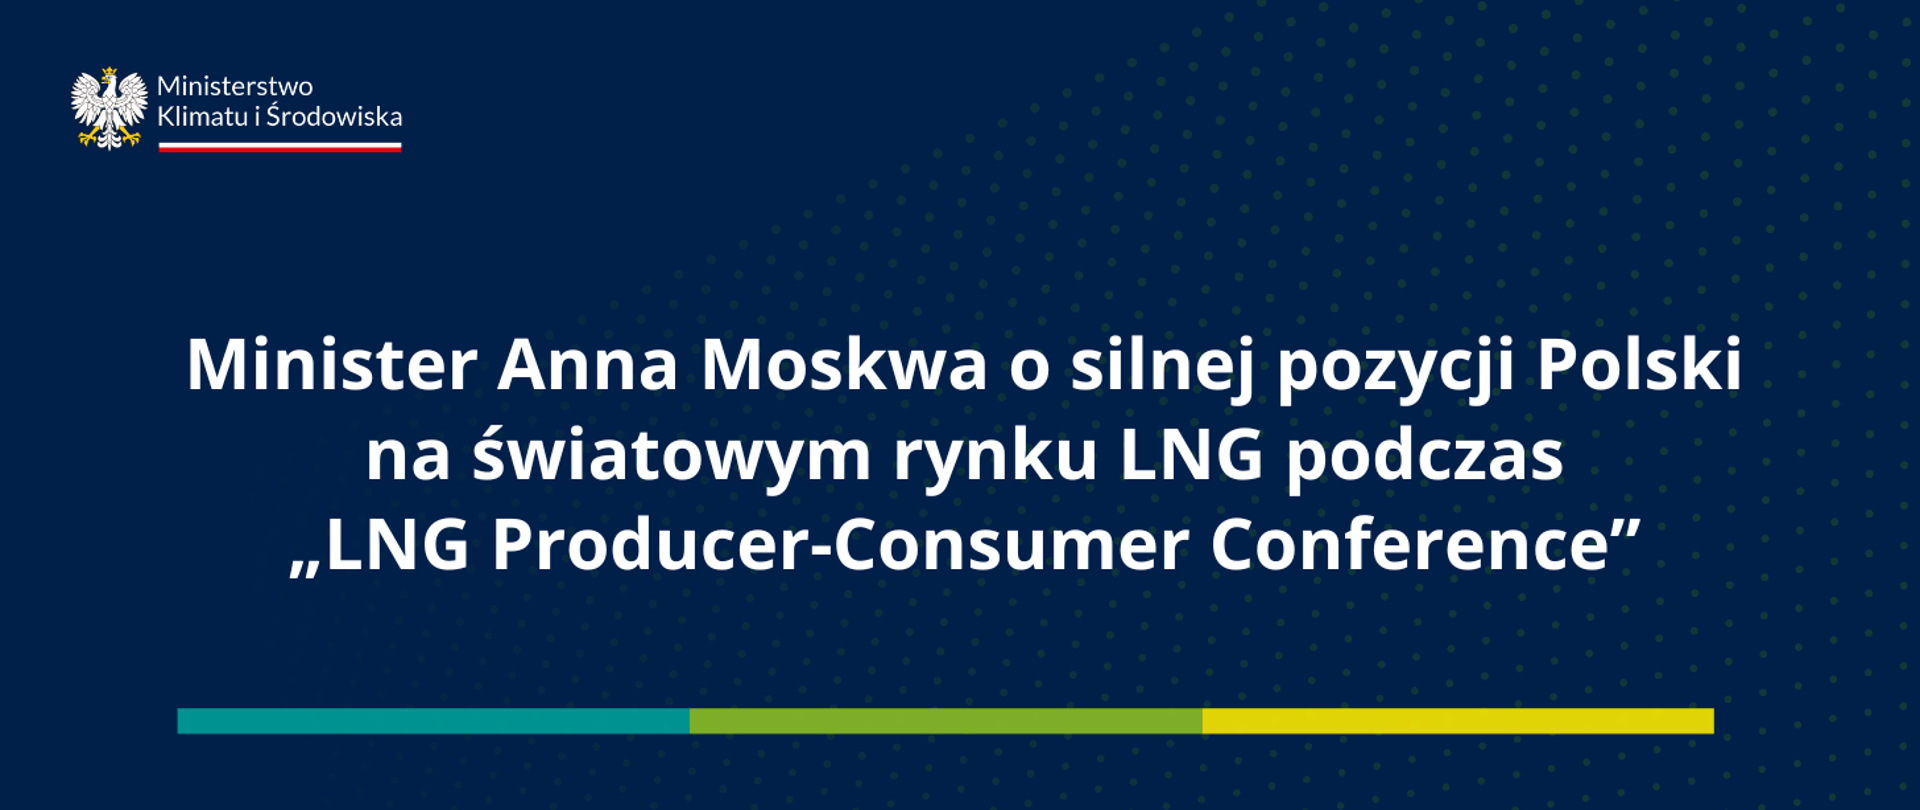 Minister Anna Moskwa o silnej pozycji Polski na światowym rynku LNG.